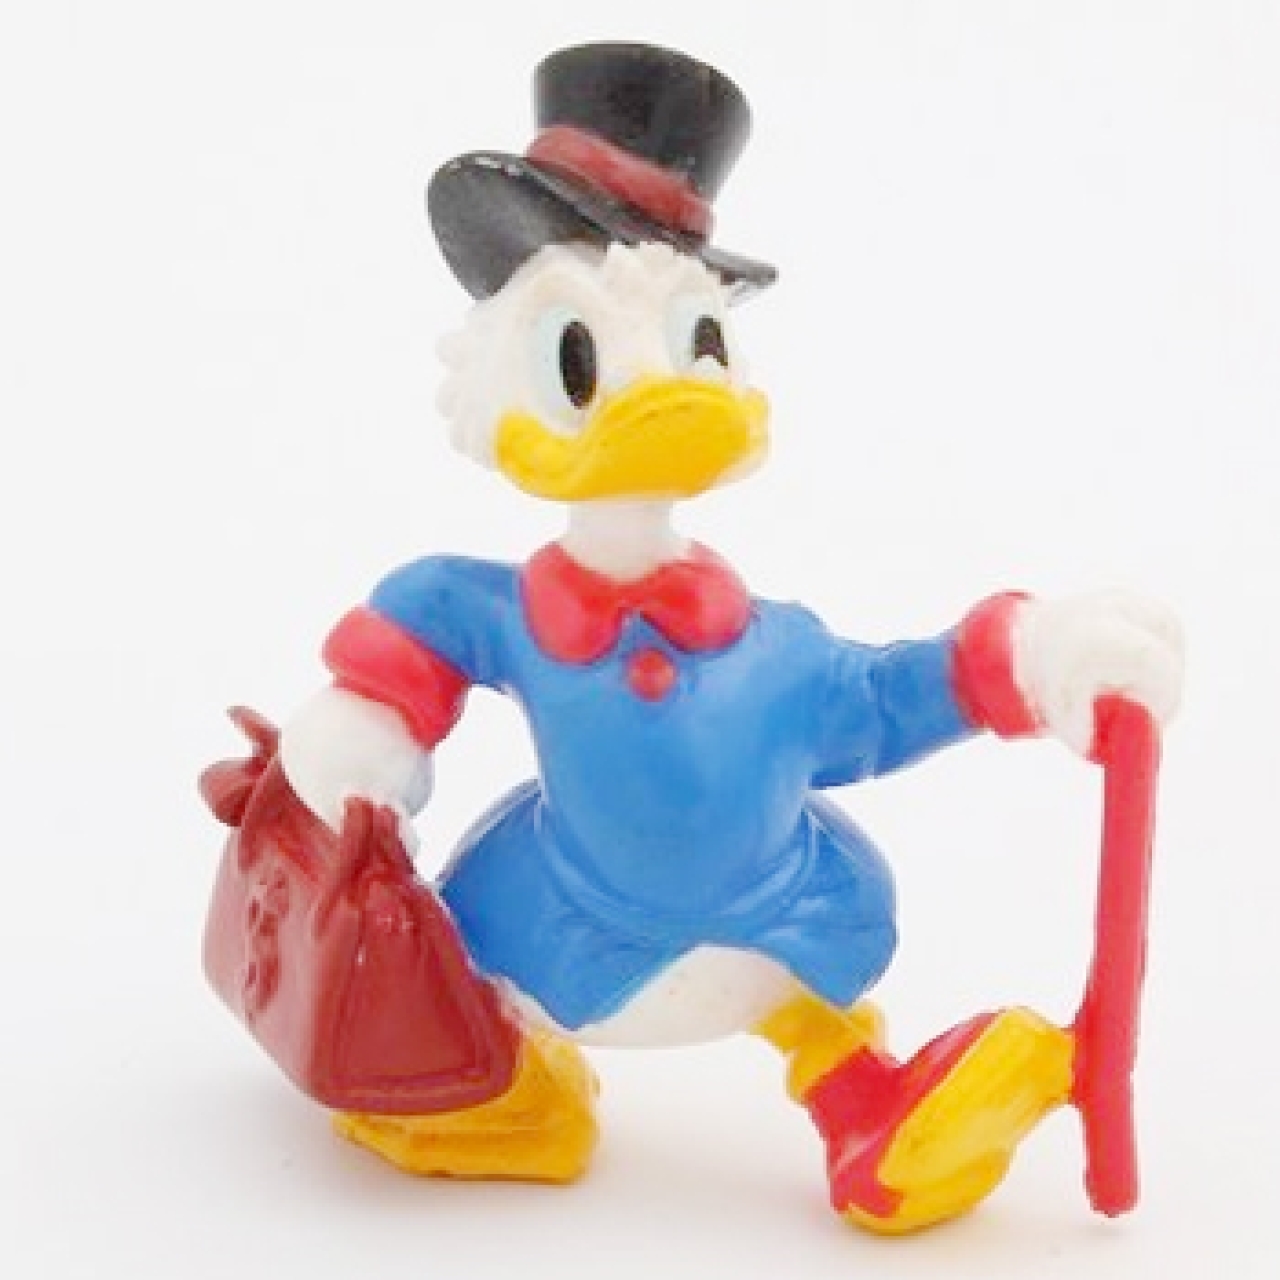 Tortenfigur "Dagobert Duck", 6 cm